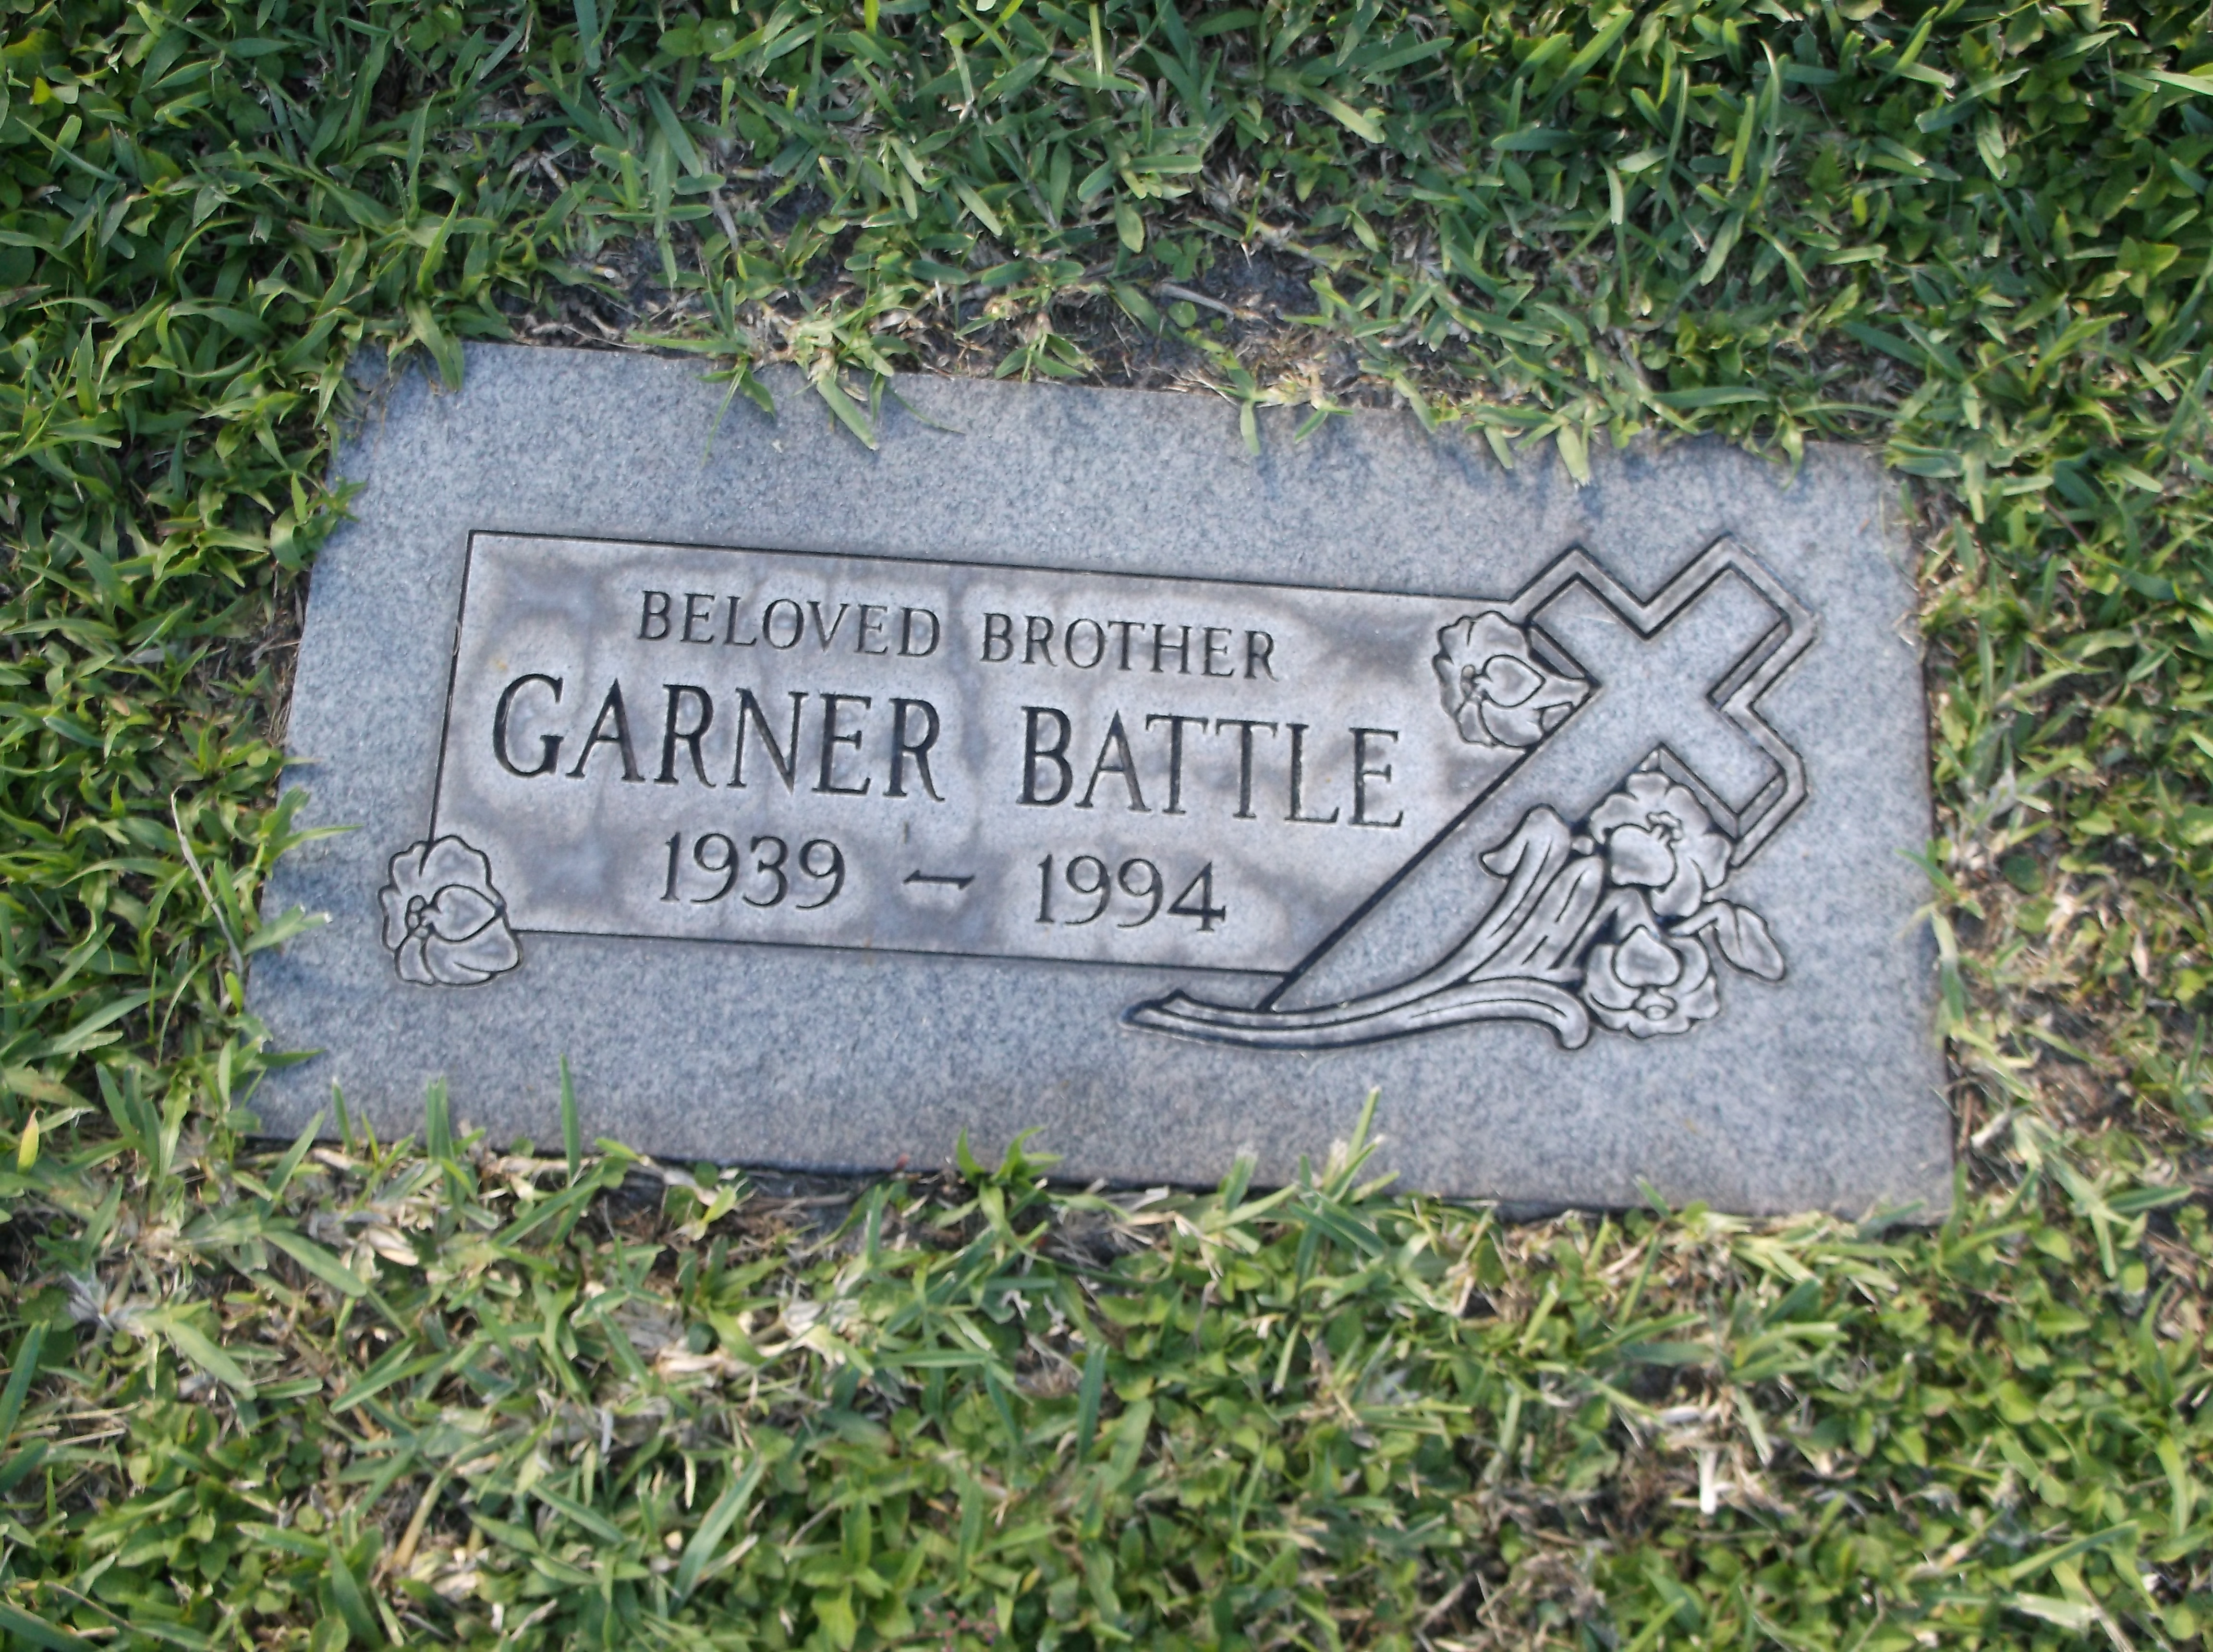 Garner Battle